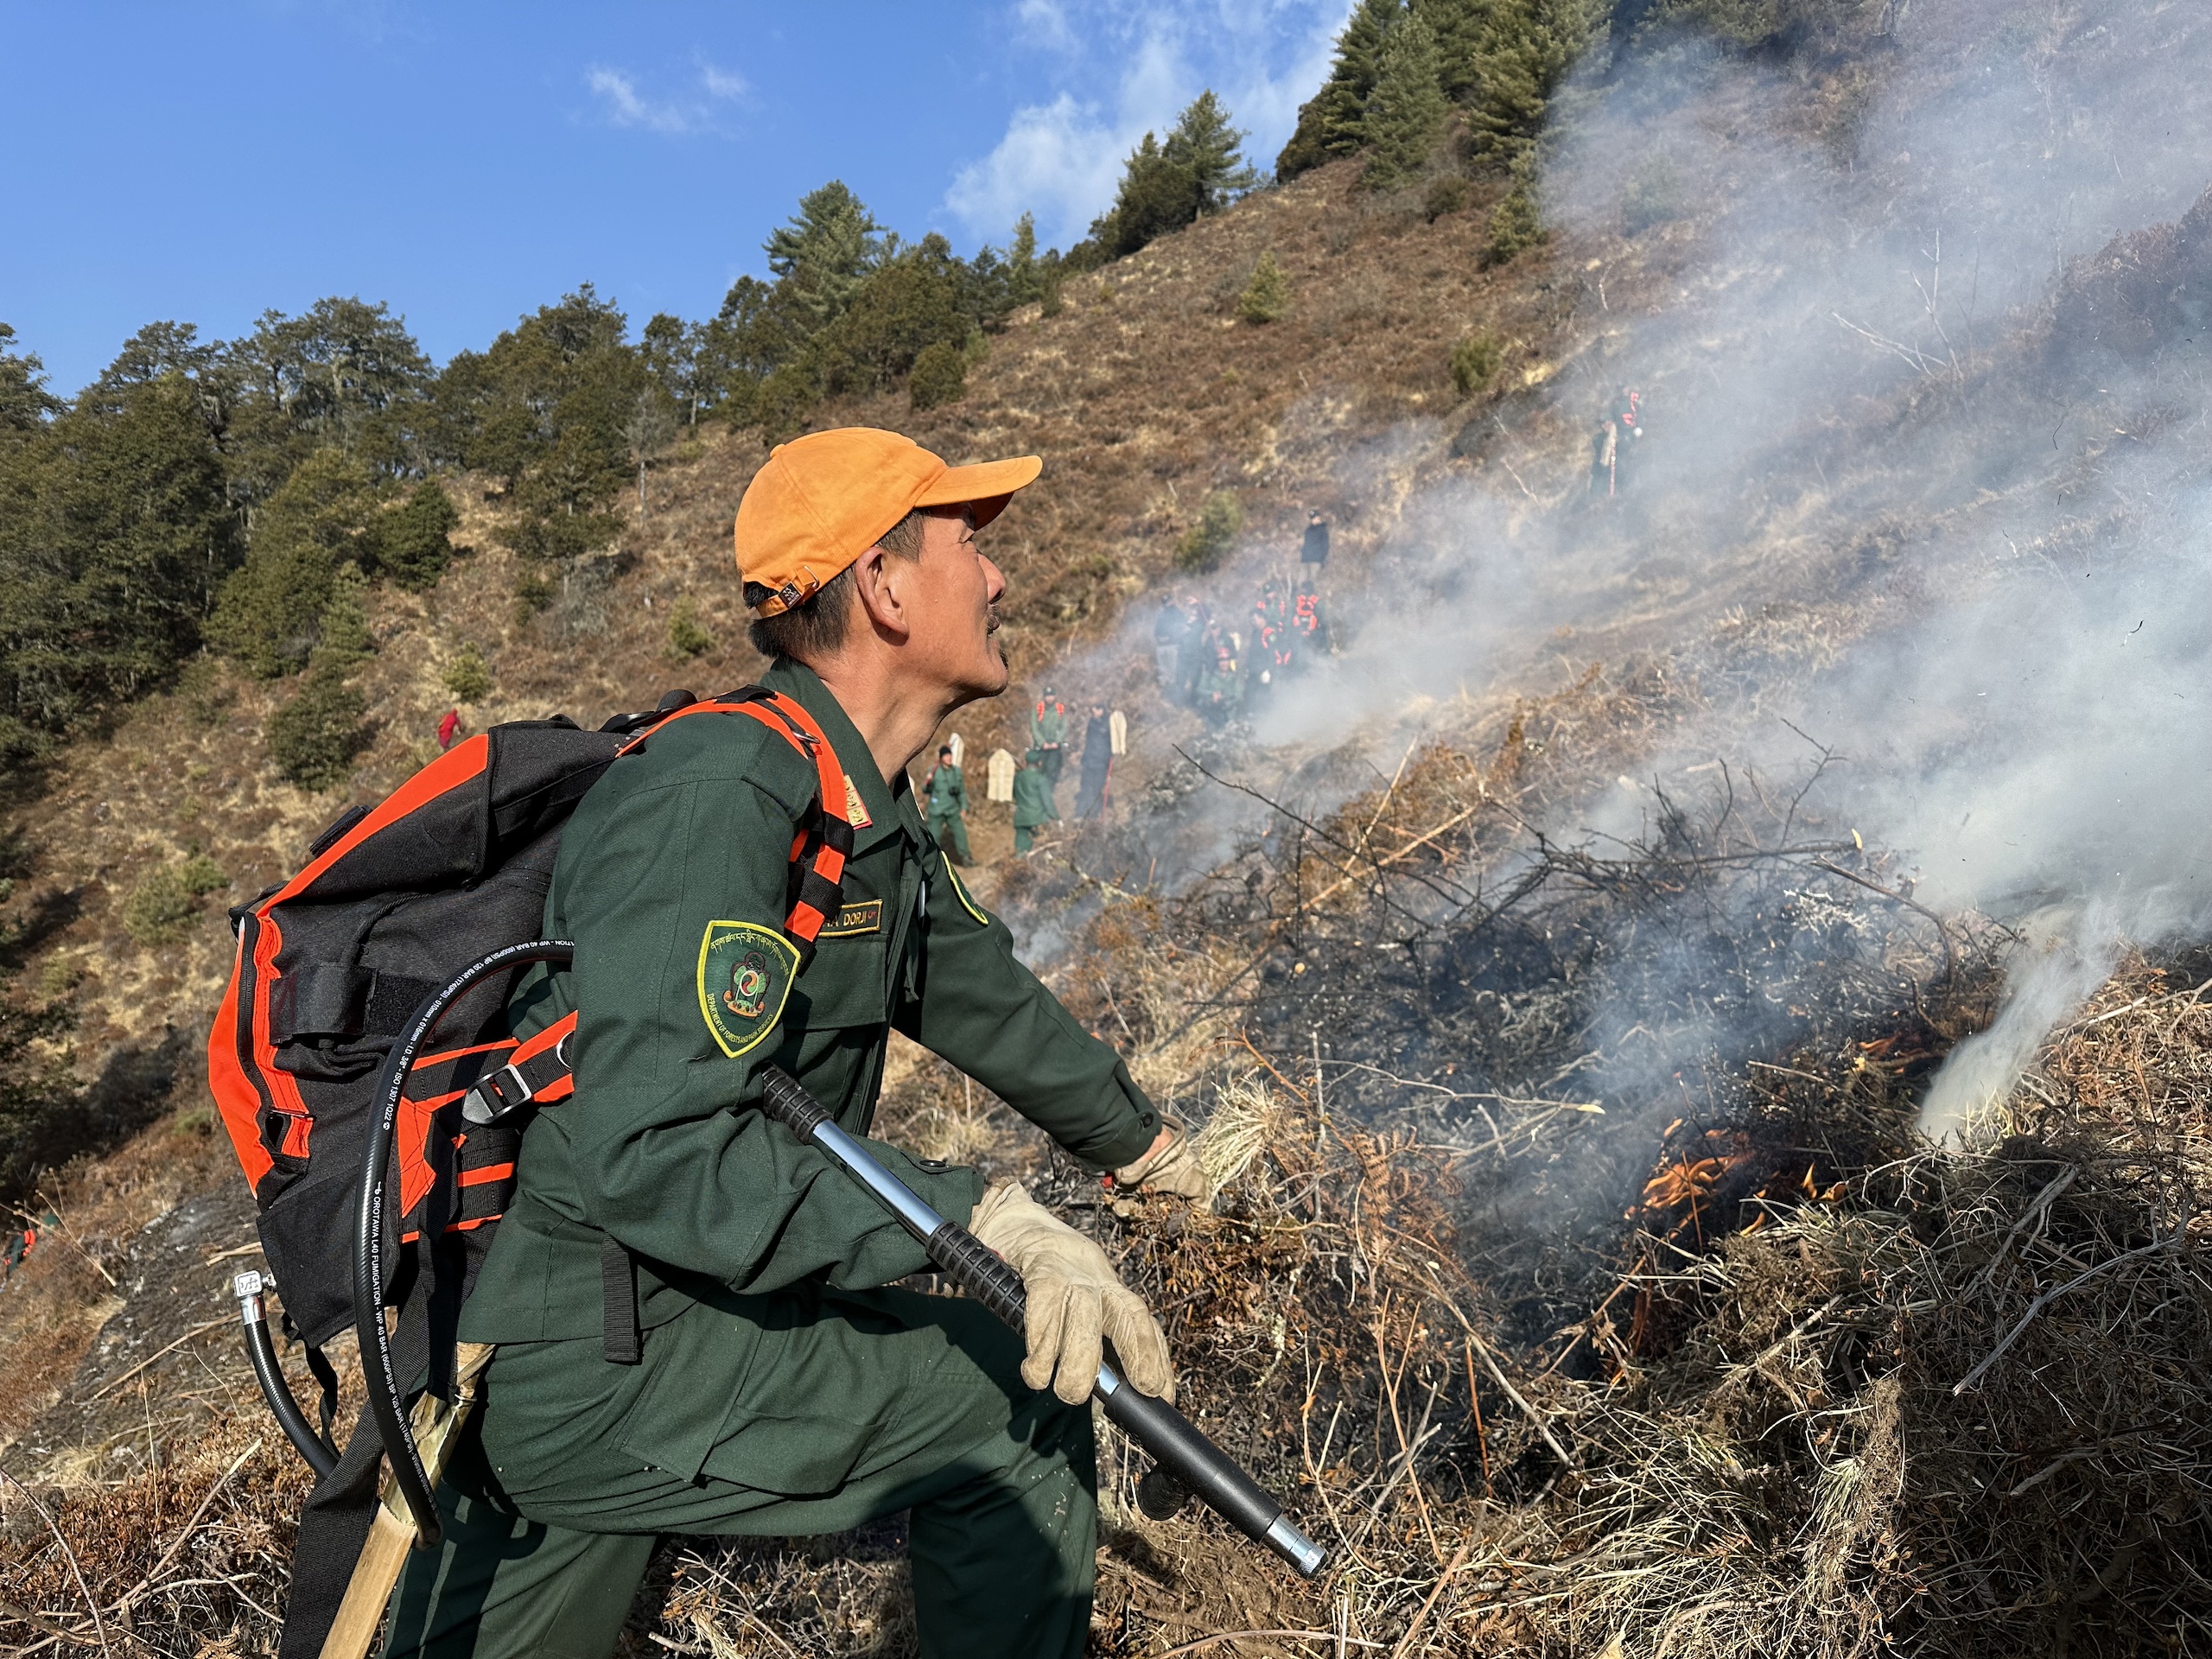 <p>भूटान के एक वन अधिकारी ने उत्तर-पश्चिम भूटान के मेवांग गेवोग में एक प्रायोगिक क्षेत्र में सावधानीपूर्वक आग लगाई। (फोटो: सुष्मिता कुंवर / ईसीमॉड)</p>